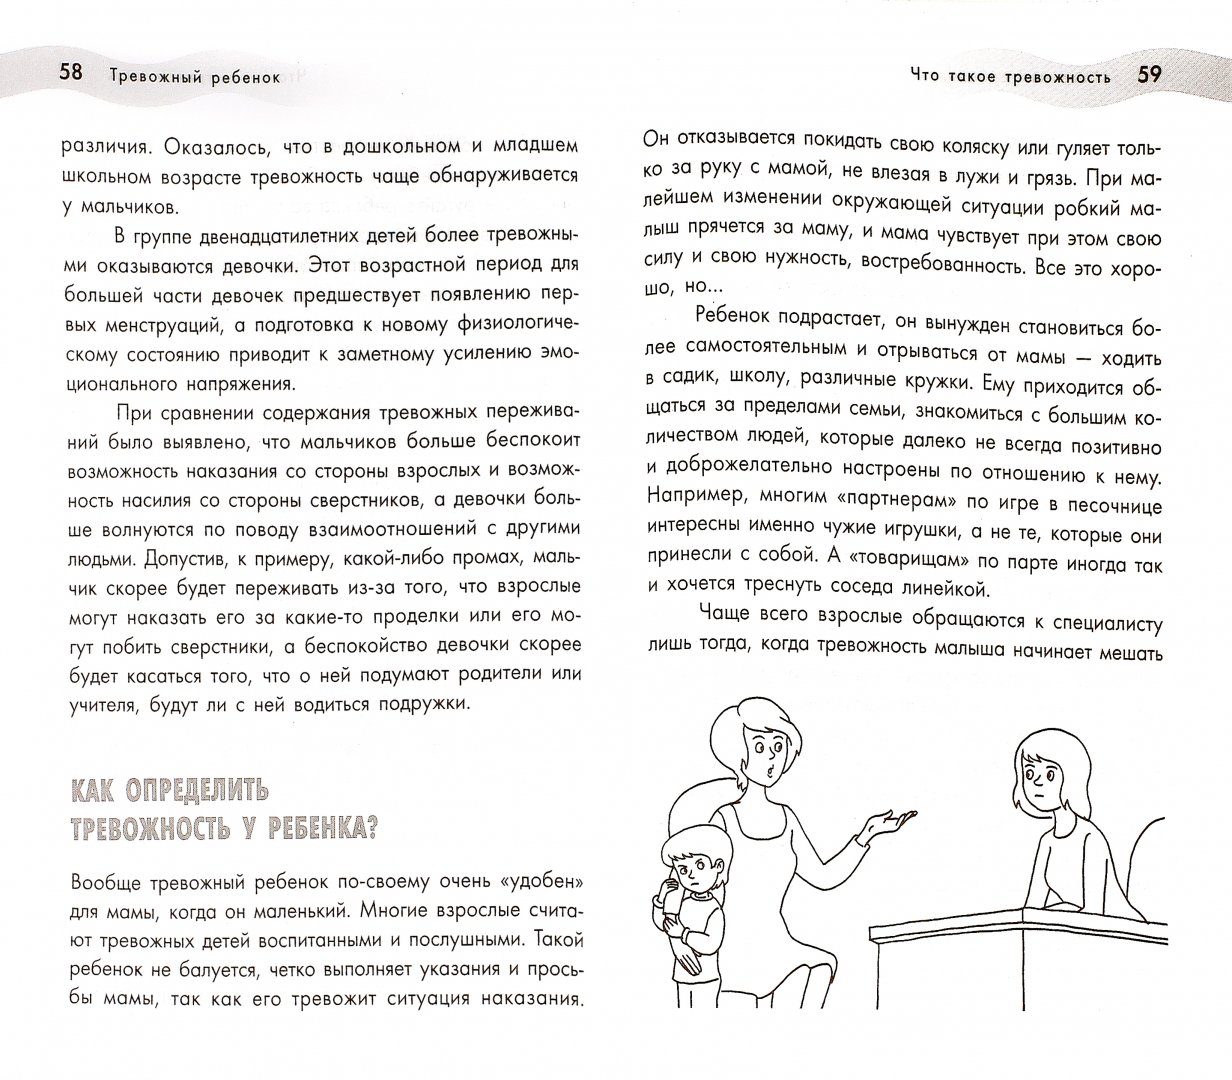 Иллюстрация 1 из 4 для Тревожный ребенок - Кириллова, Беляева | Лабиринт - книги. Источник: Лабиринт